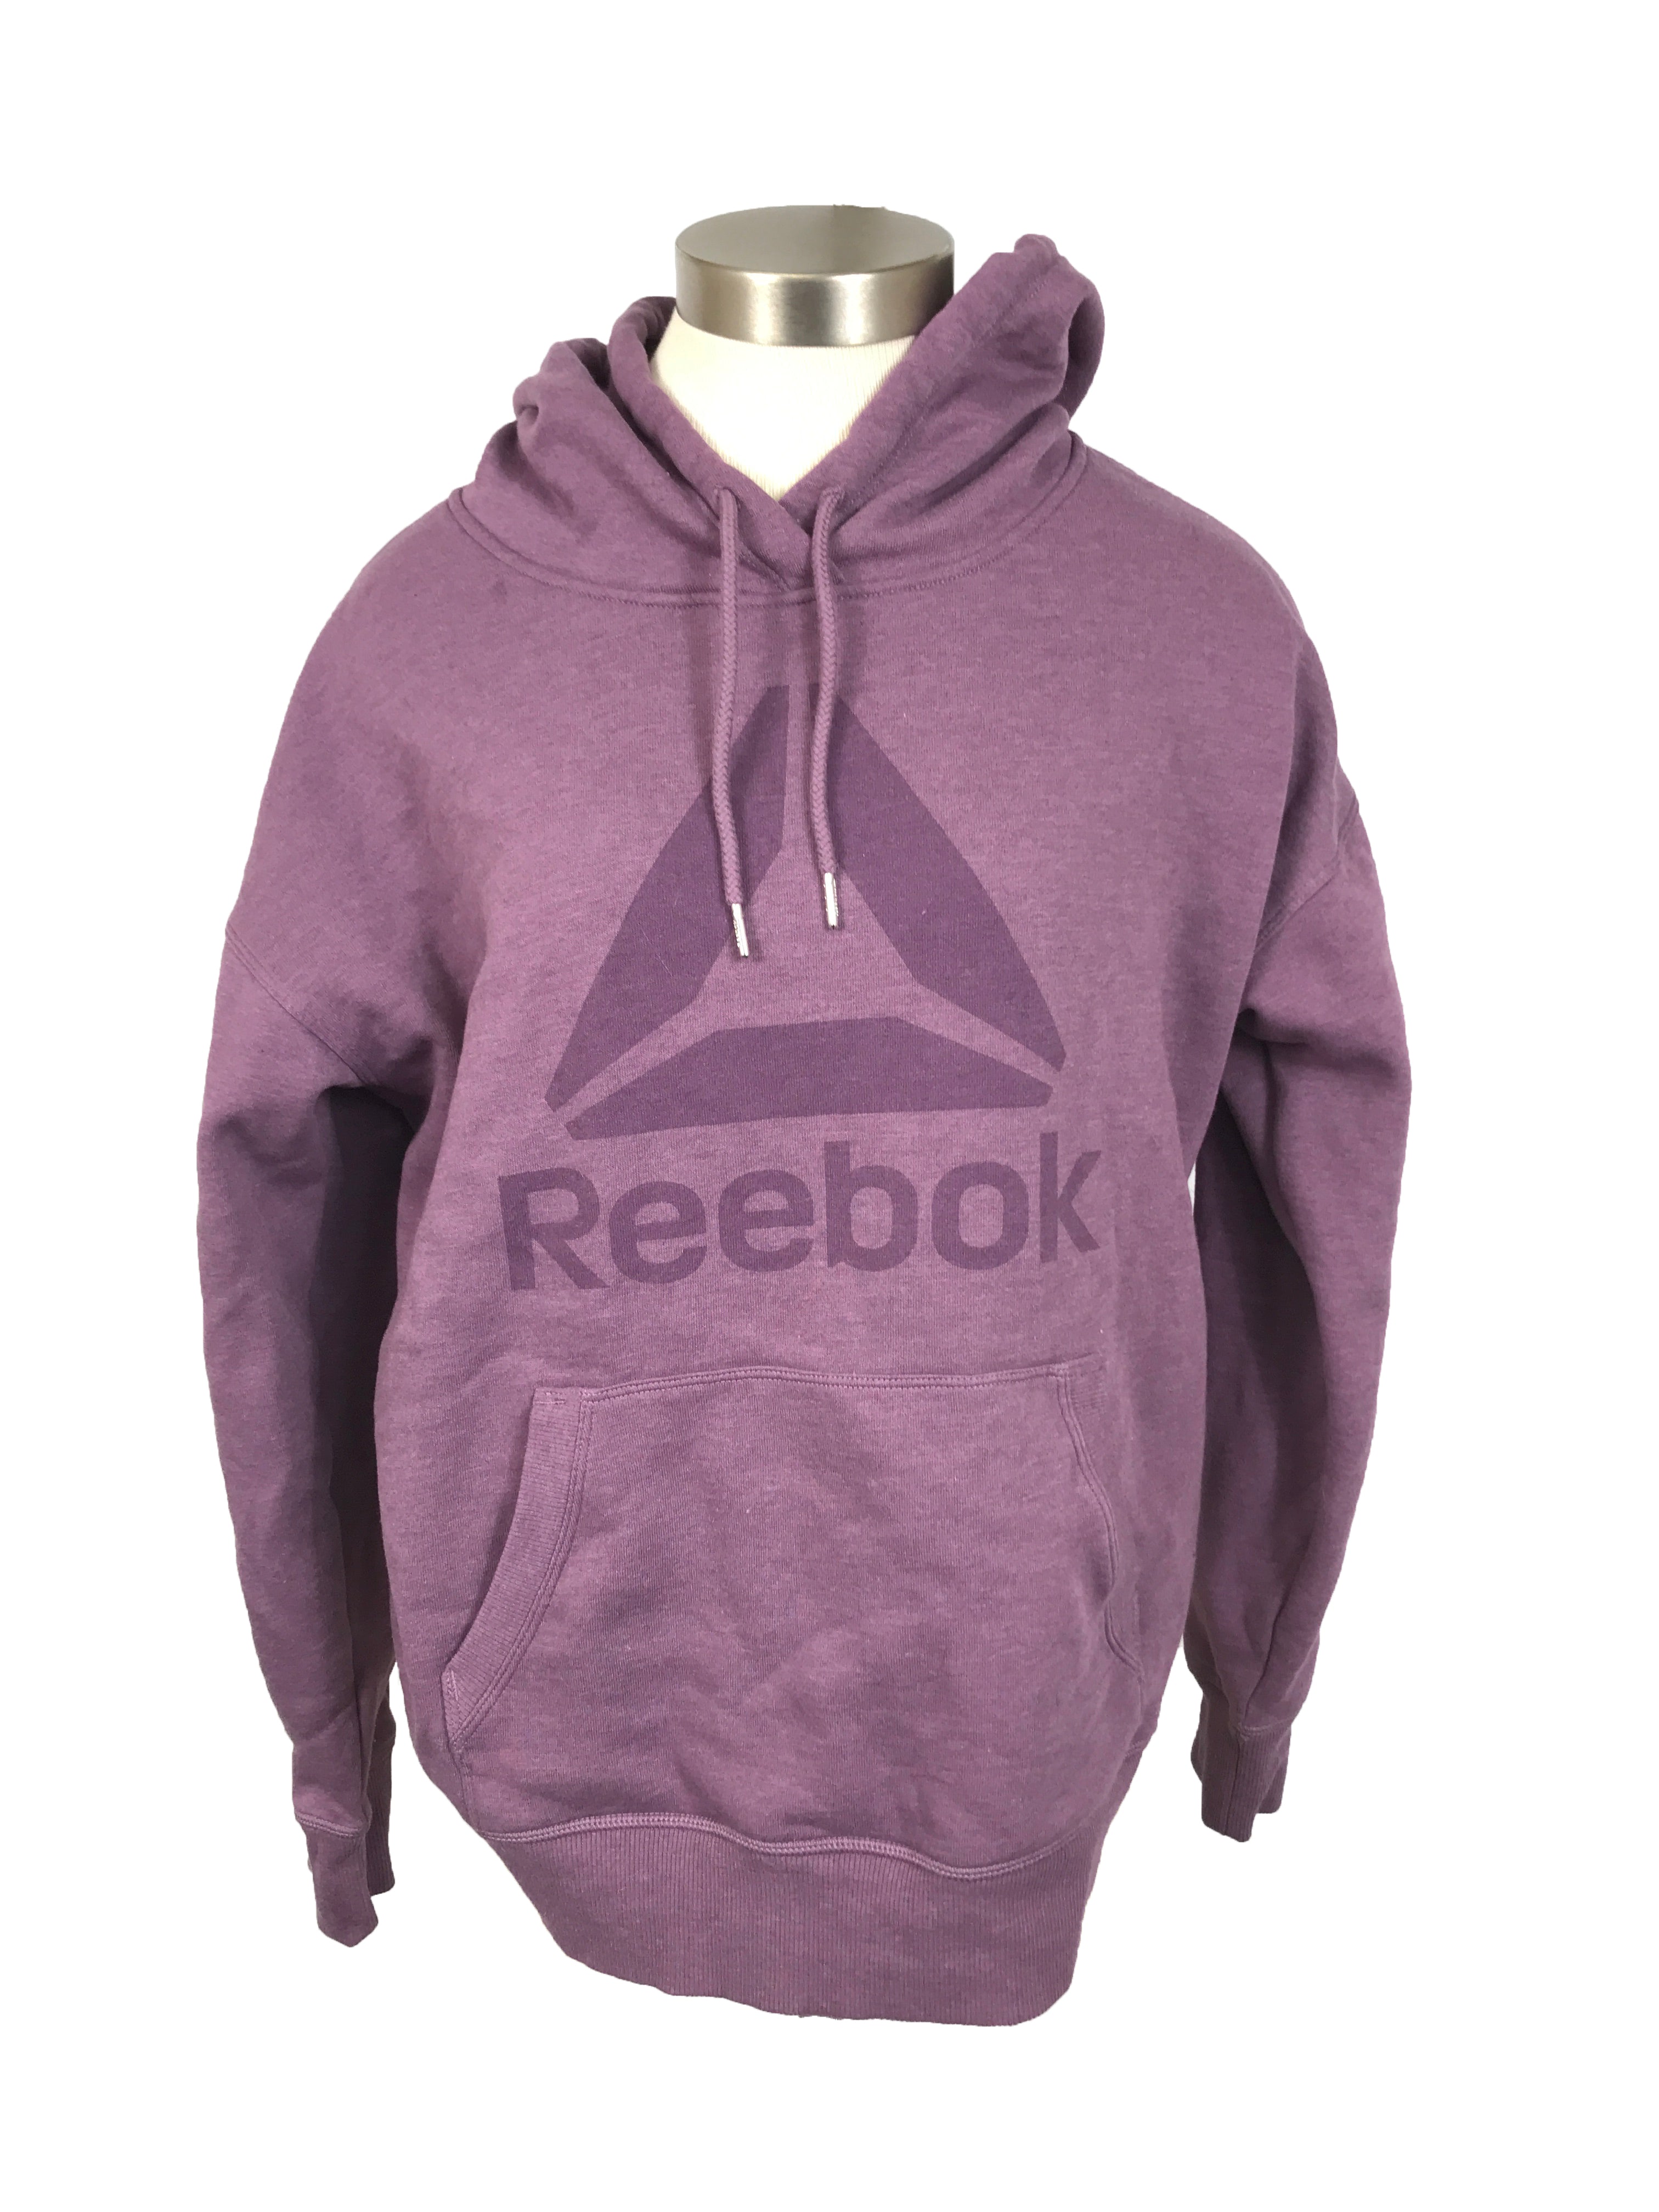 Reebok Purple Hoodie Women's Size Large